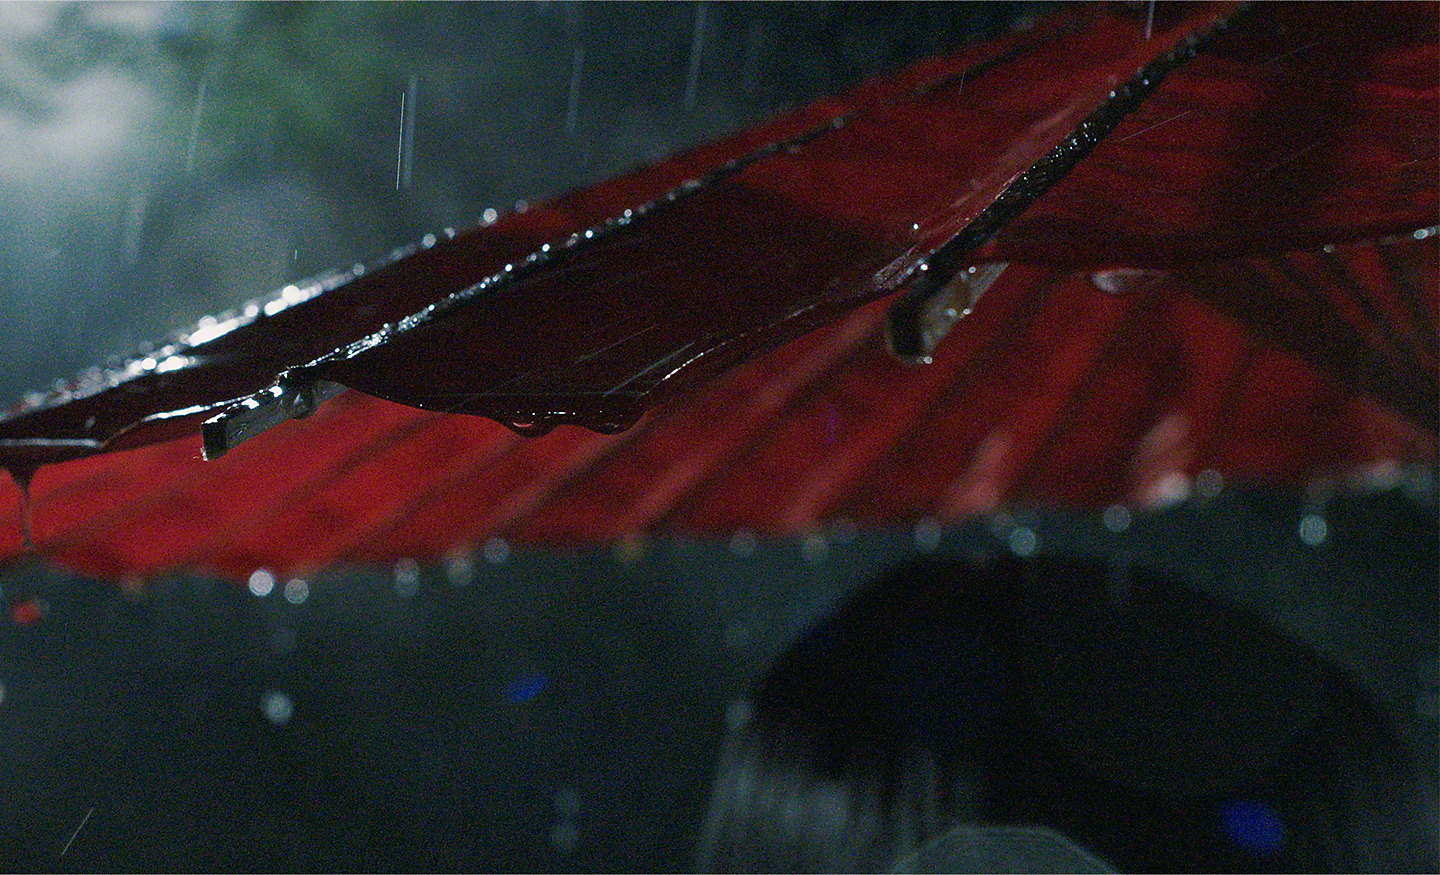 Regn som faller på en rød parasoll